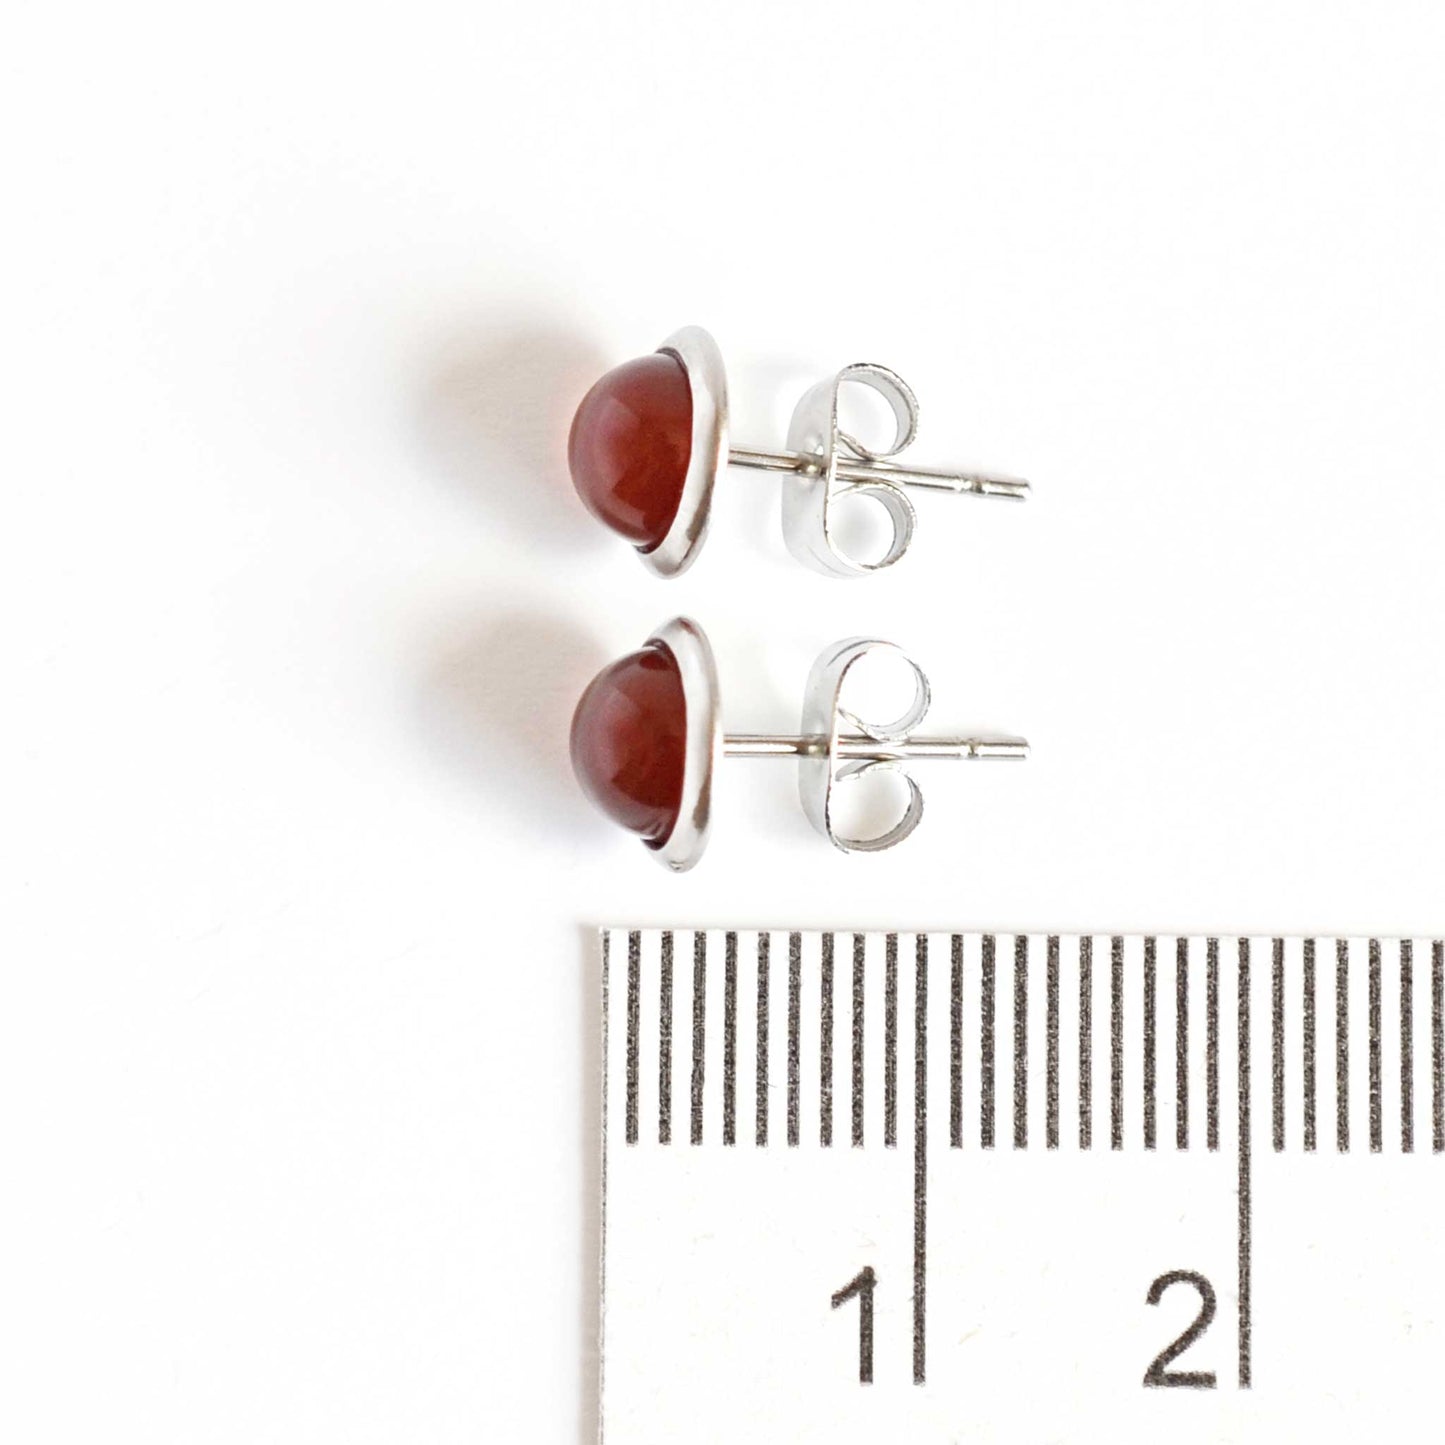 8mm wide Carnelian earrings next to ruler